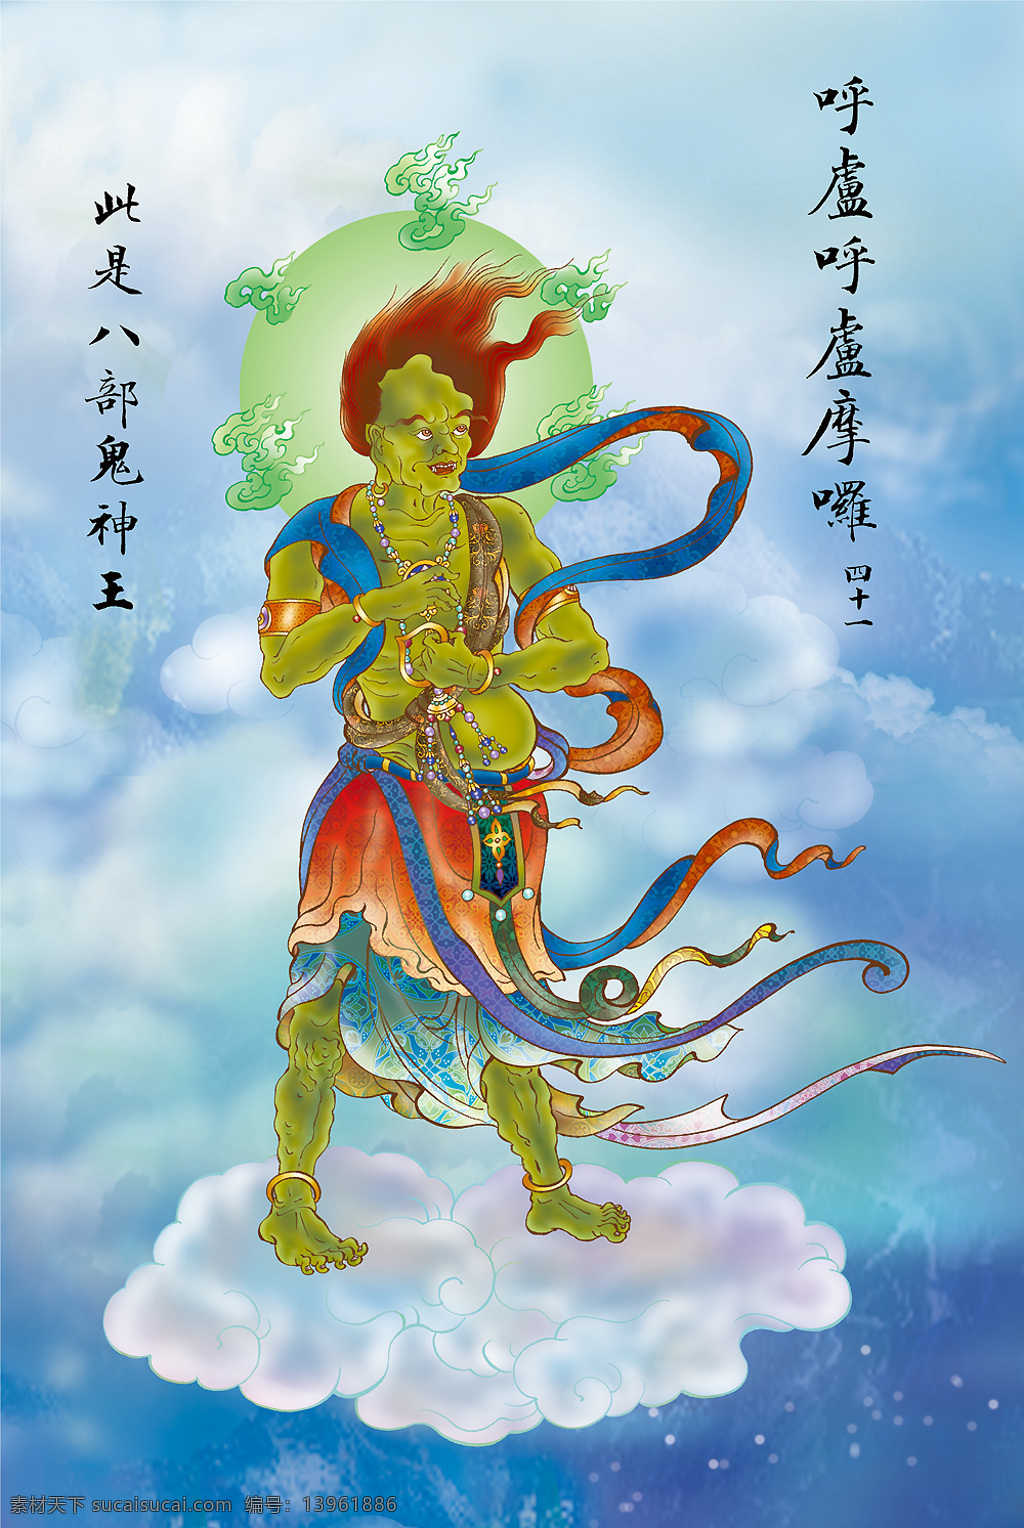 大悲 出 相图 佛教 依林法师画 林隆达居士书 台湾 文化艺术 宗教信仰 设计图库